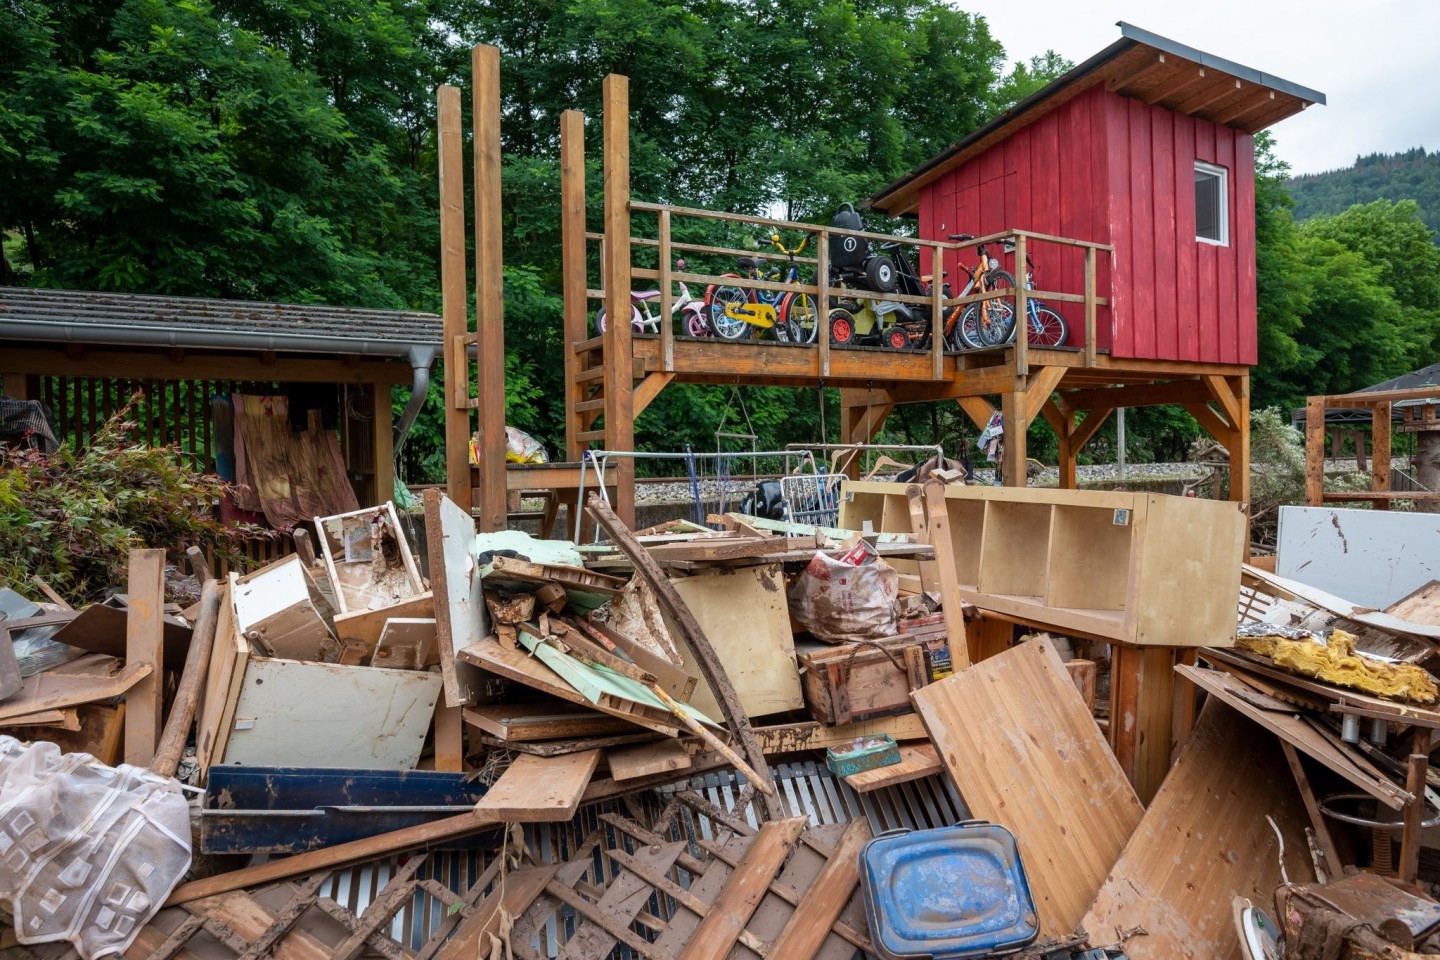 Zerstörtes Mobiliar nach der Hochwasserkatastrophe in Rheinland-Pfalz.